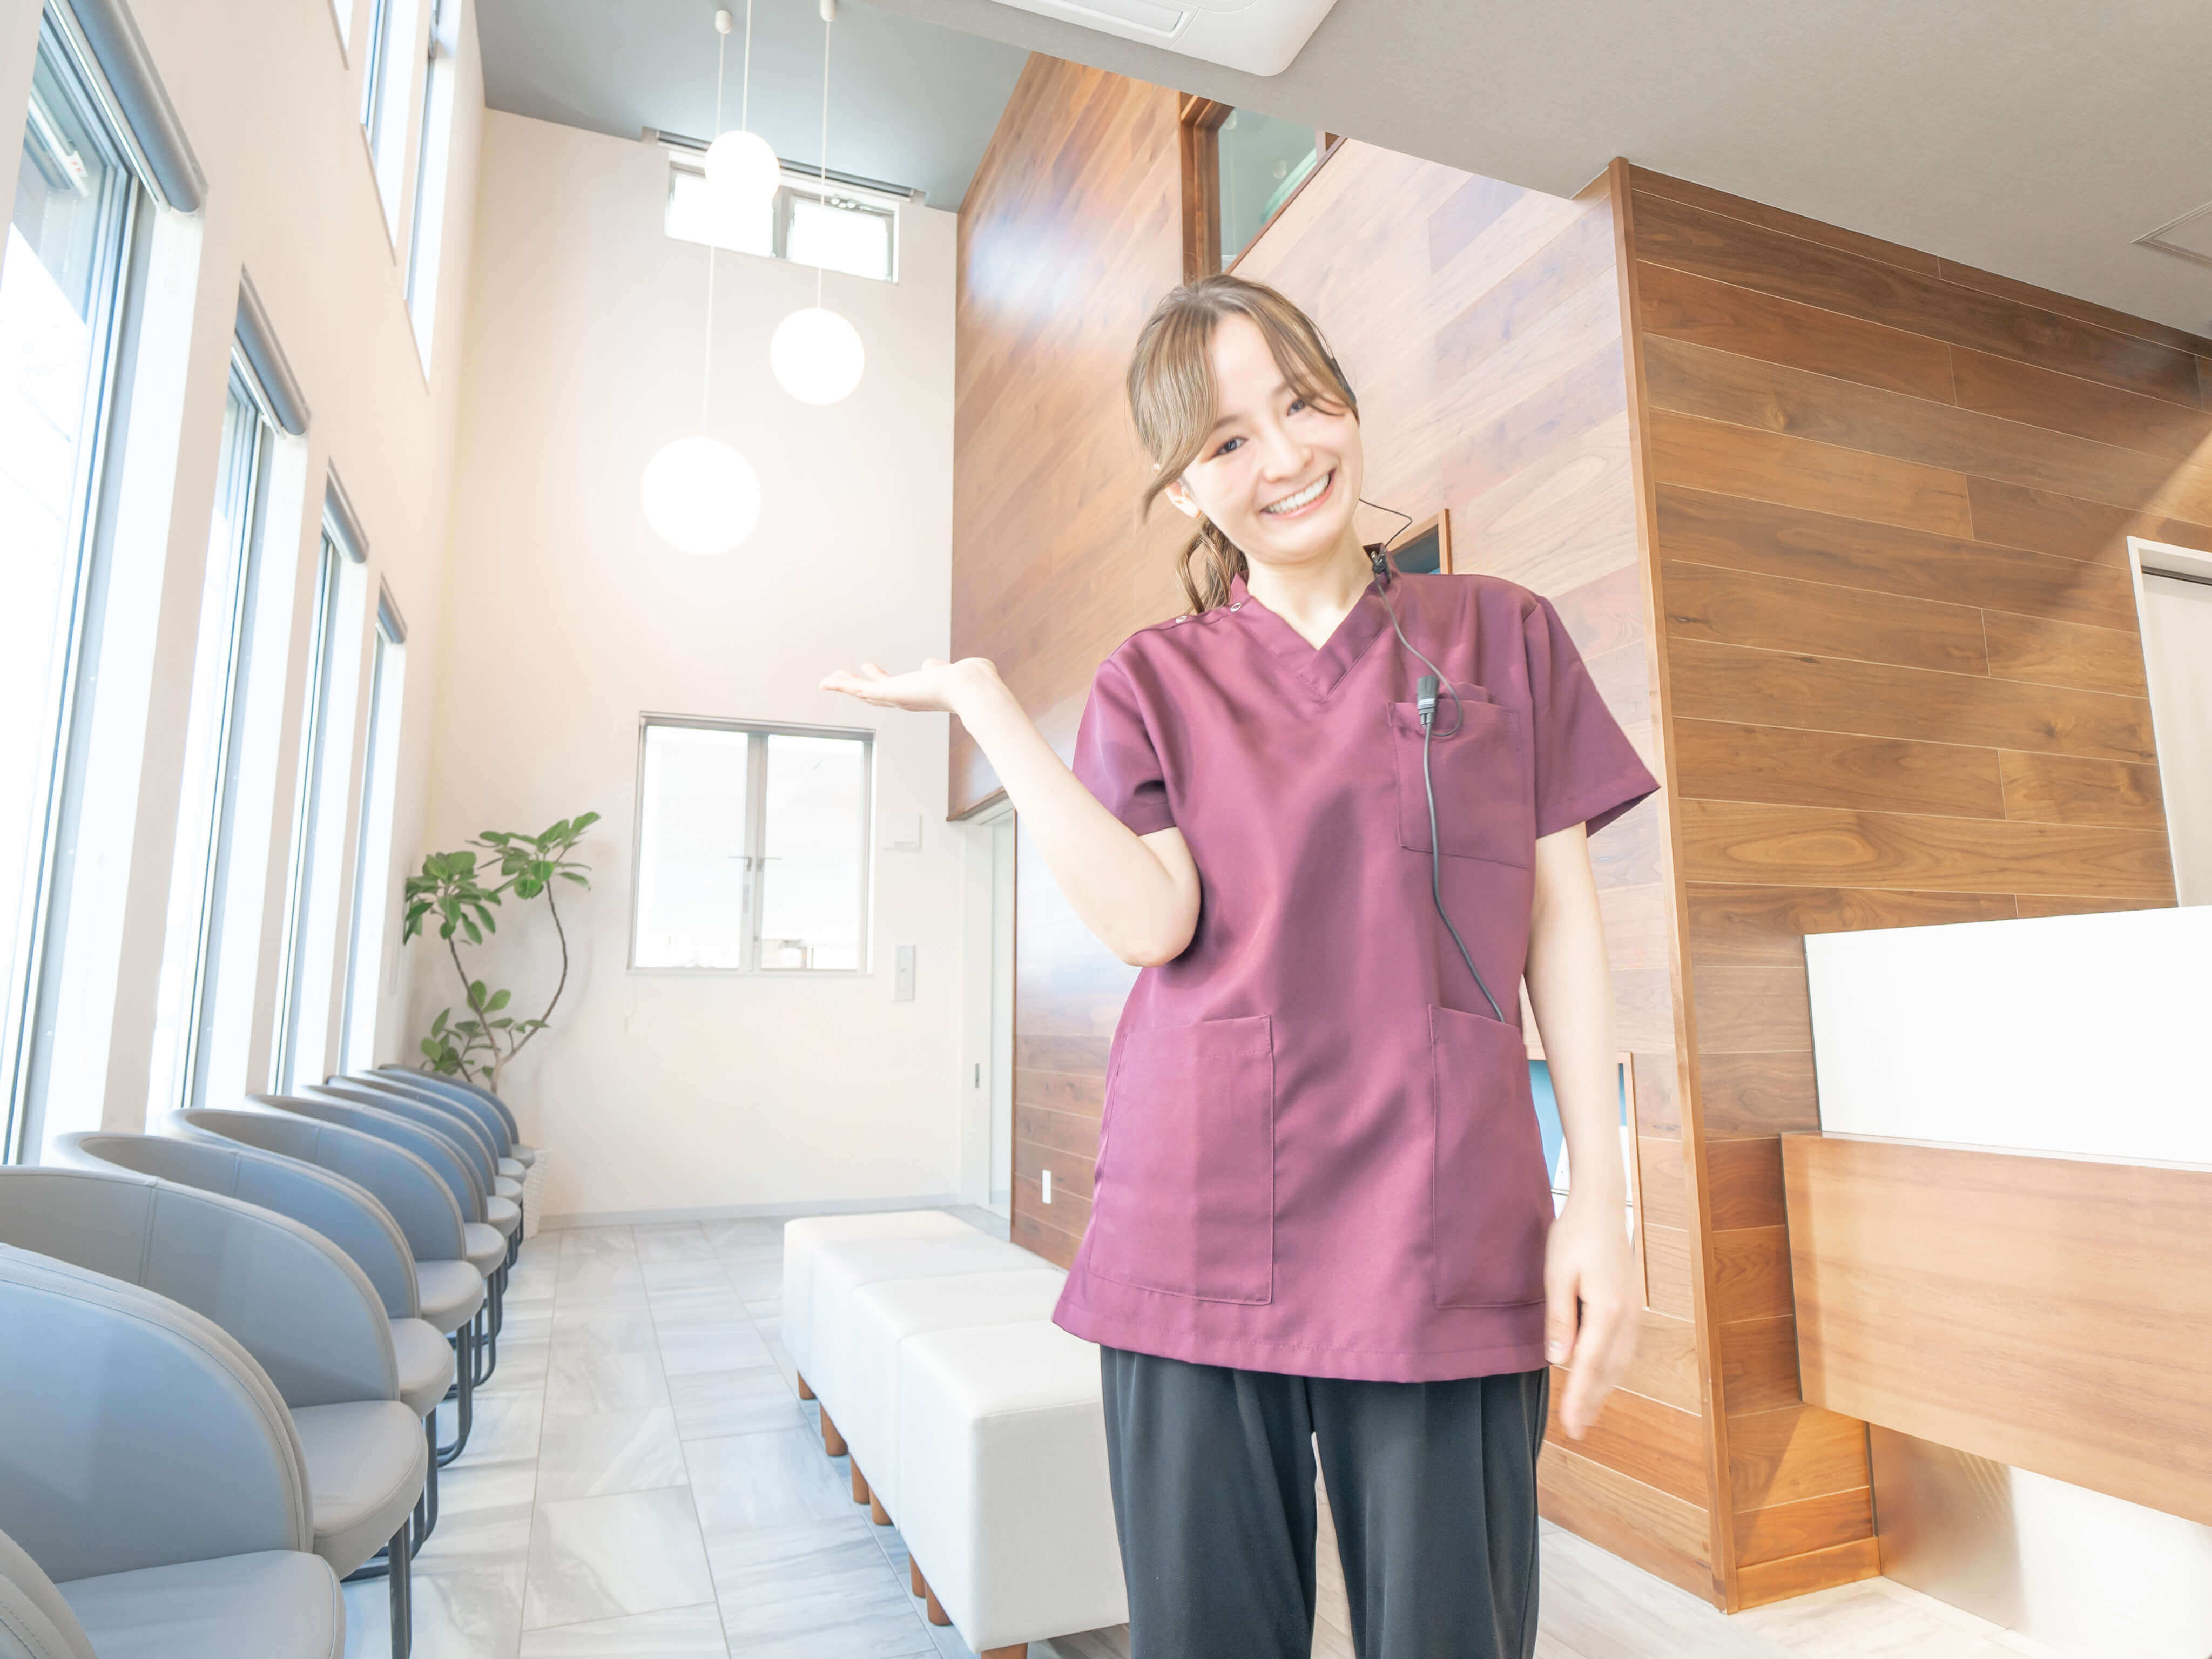 最新の設備が揃った新設したての歯科医院 | 福岡県福岡市東区の歯科医師転職求人